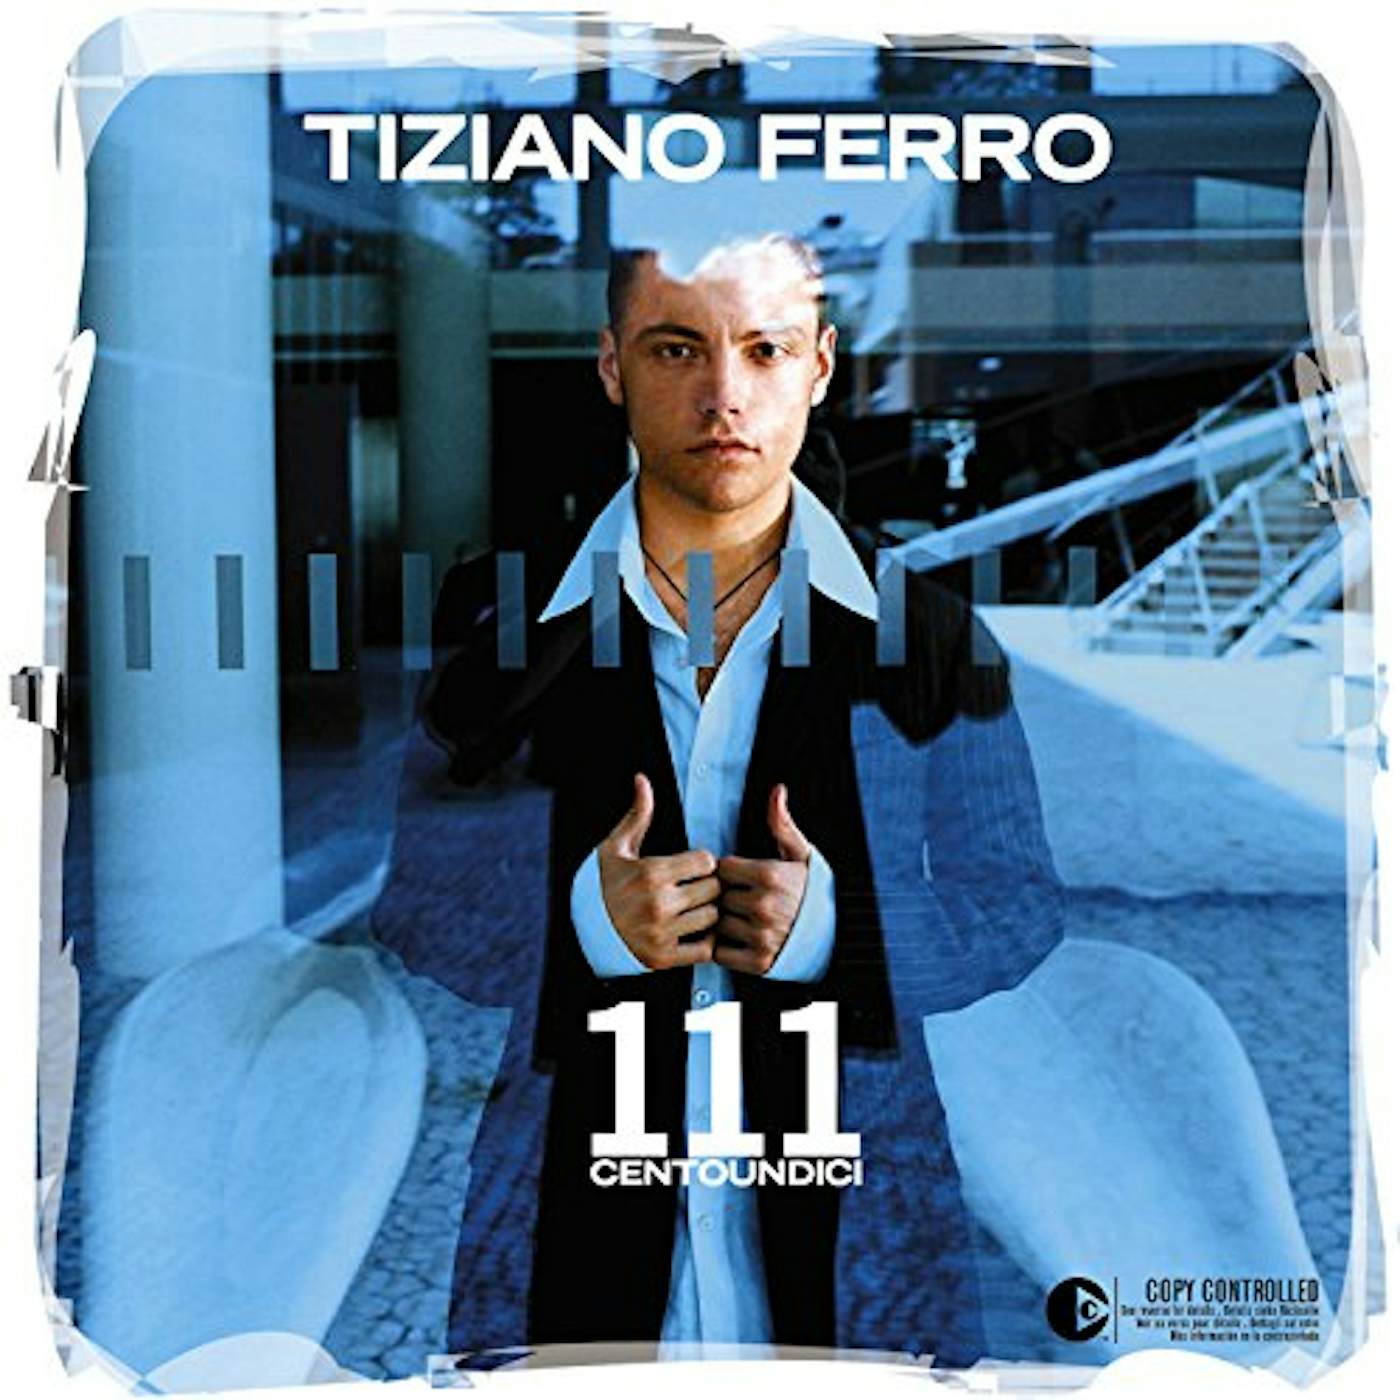 Tiziano Ferro 111 Centoundici Vinyl Record